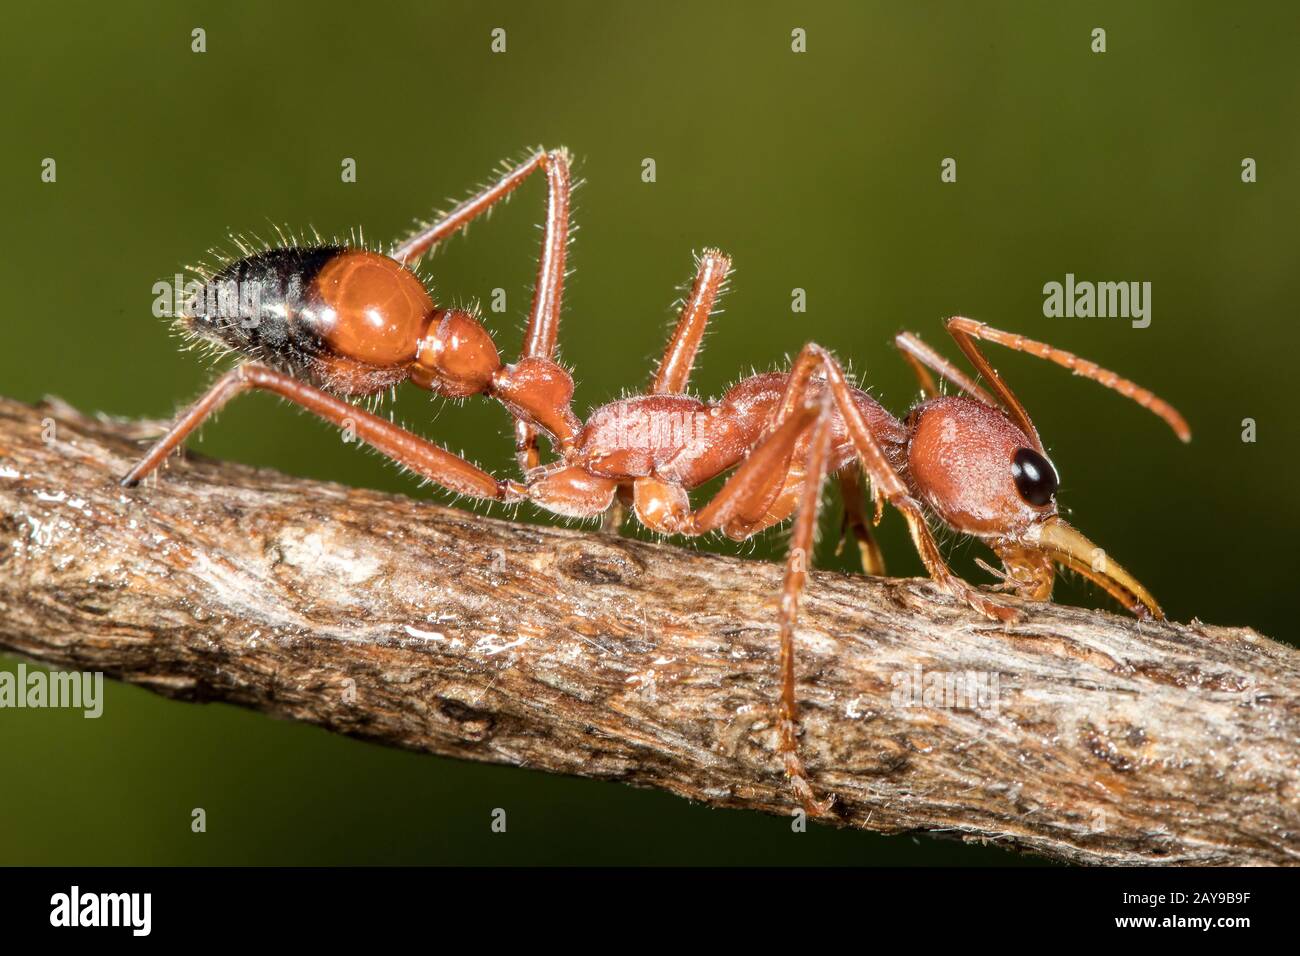 Eau potable de Bull Ant d'Australie provenant de la branche des arbres humides Banque D'Images